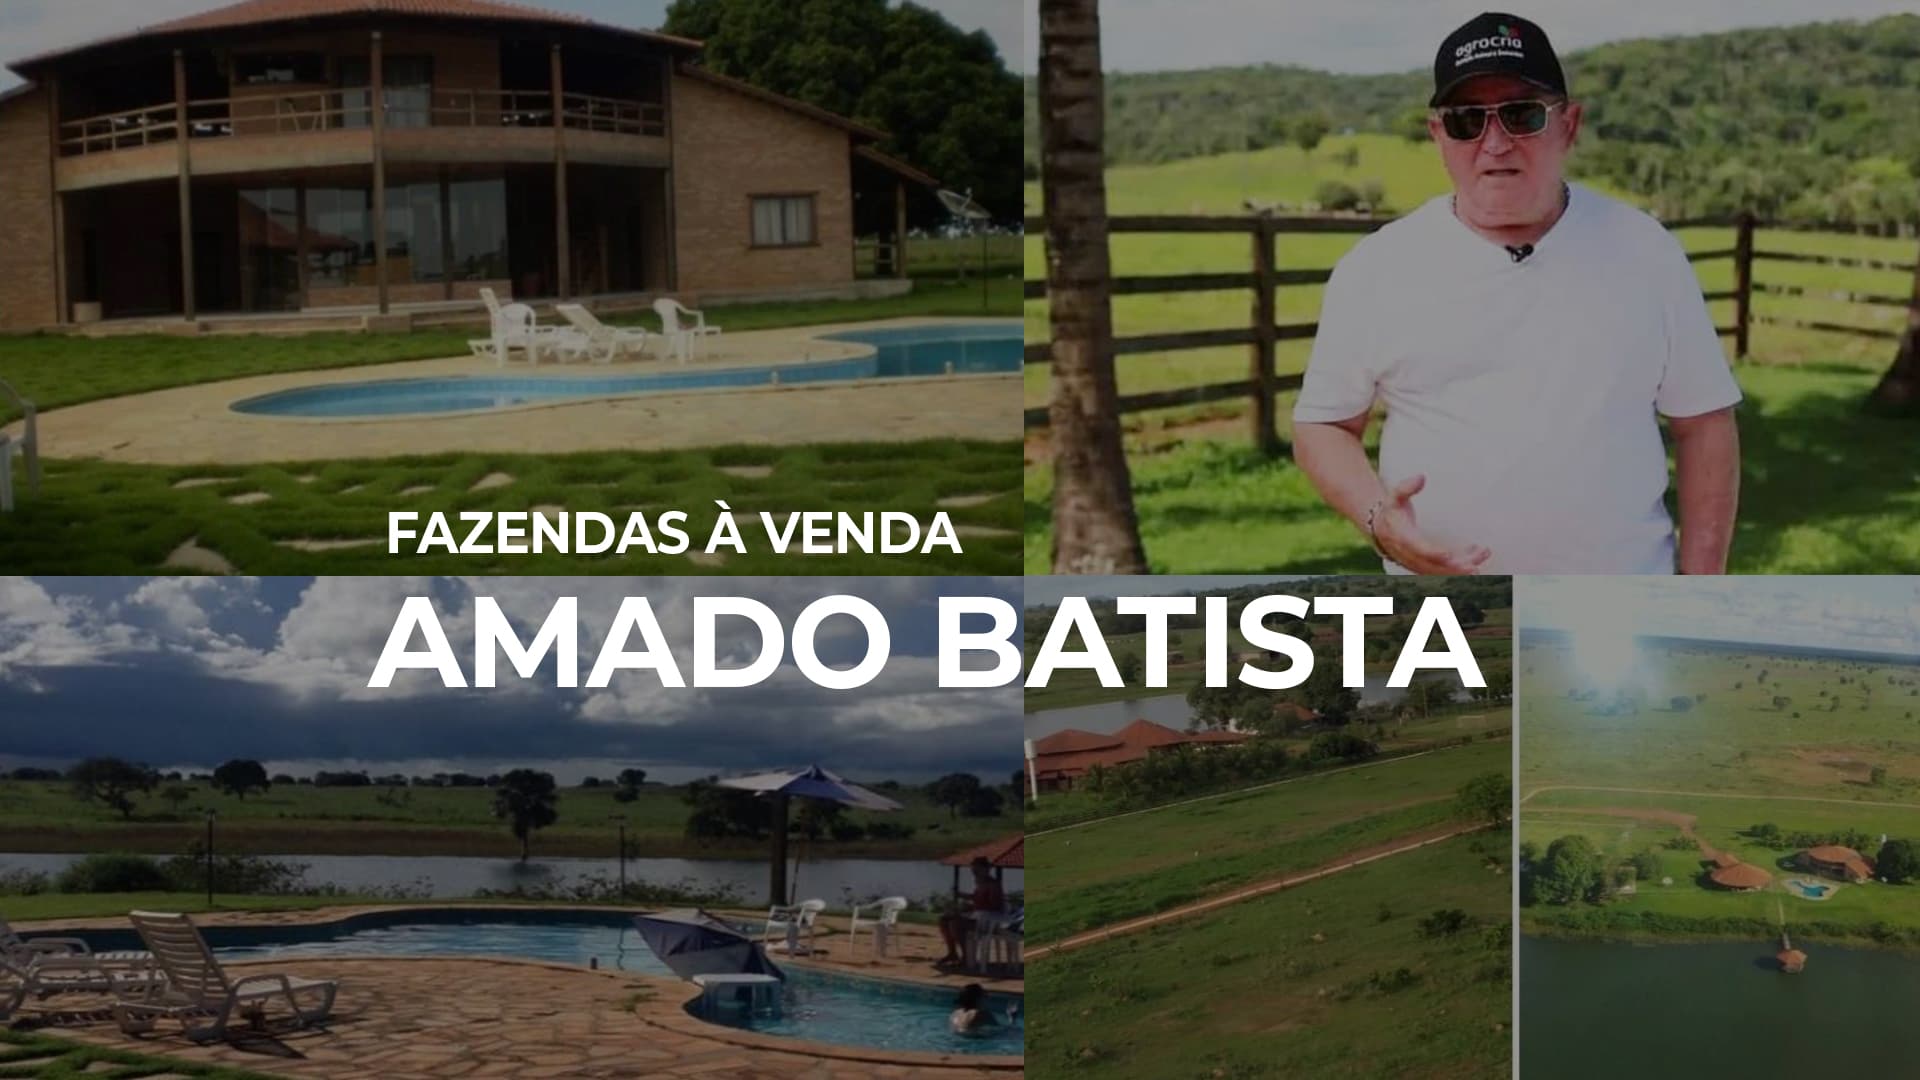 Fazendas de Amado Batista em MT estão à venda por 350 milhões, confira!